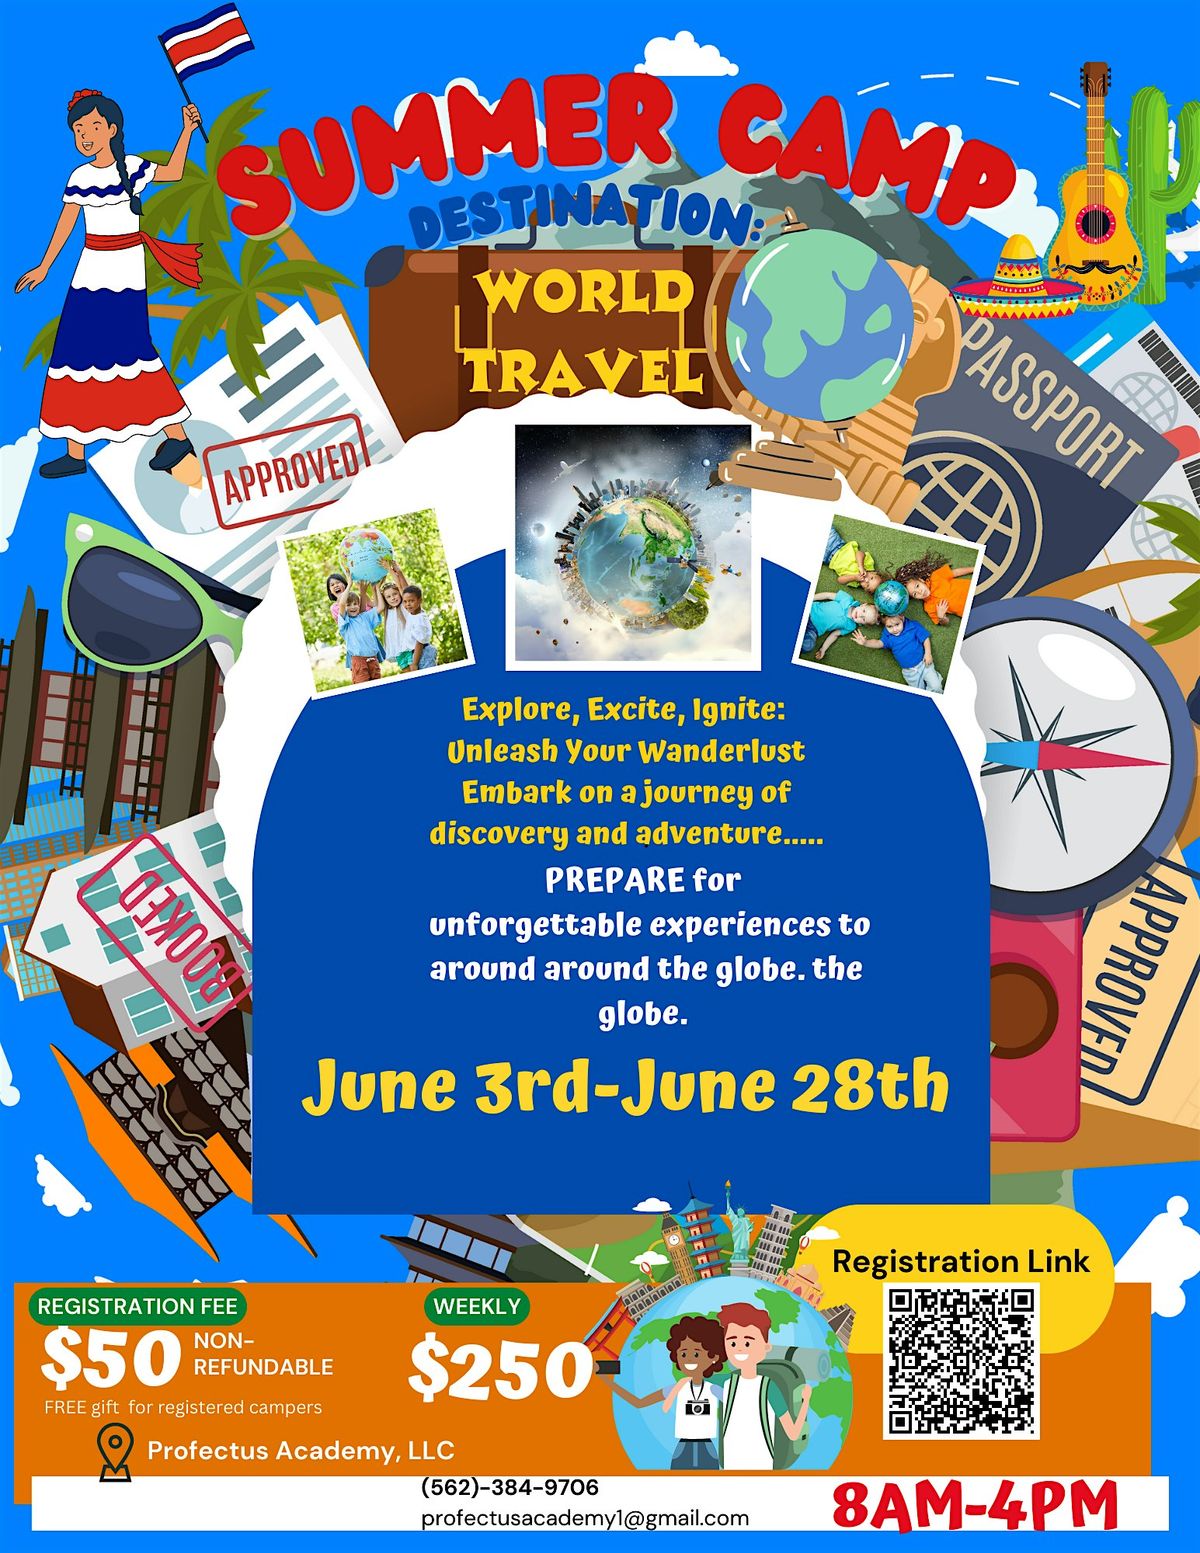 Summer Camp Destination: World Travel